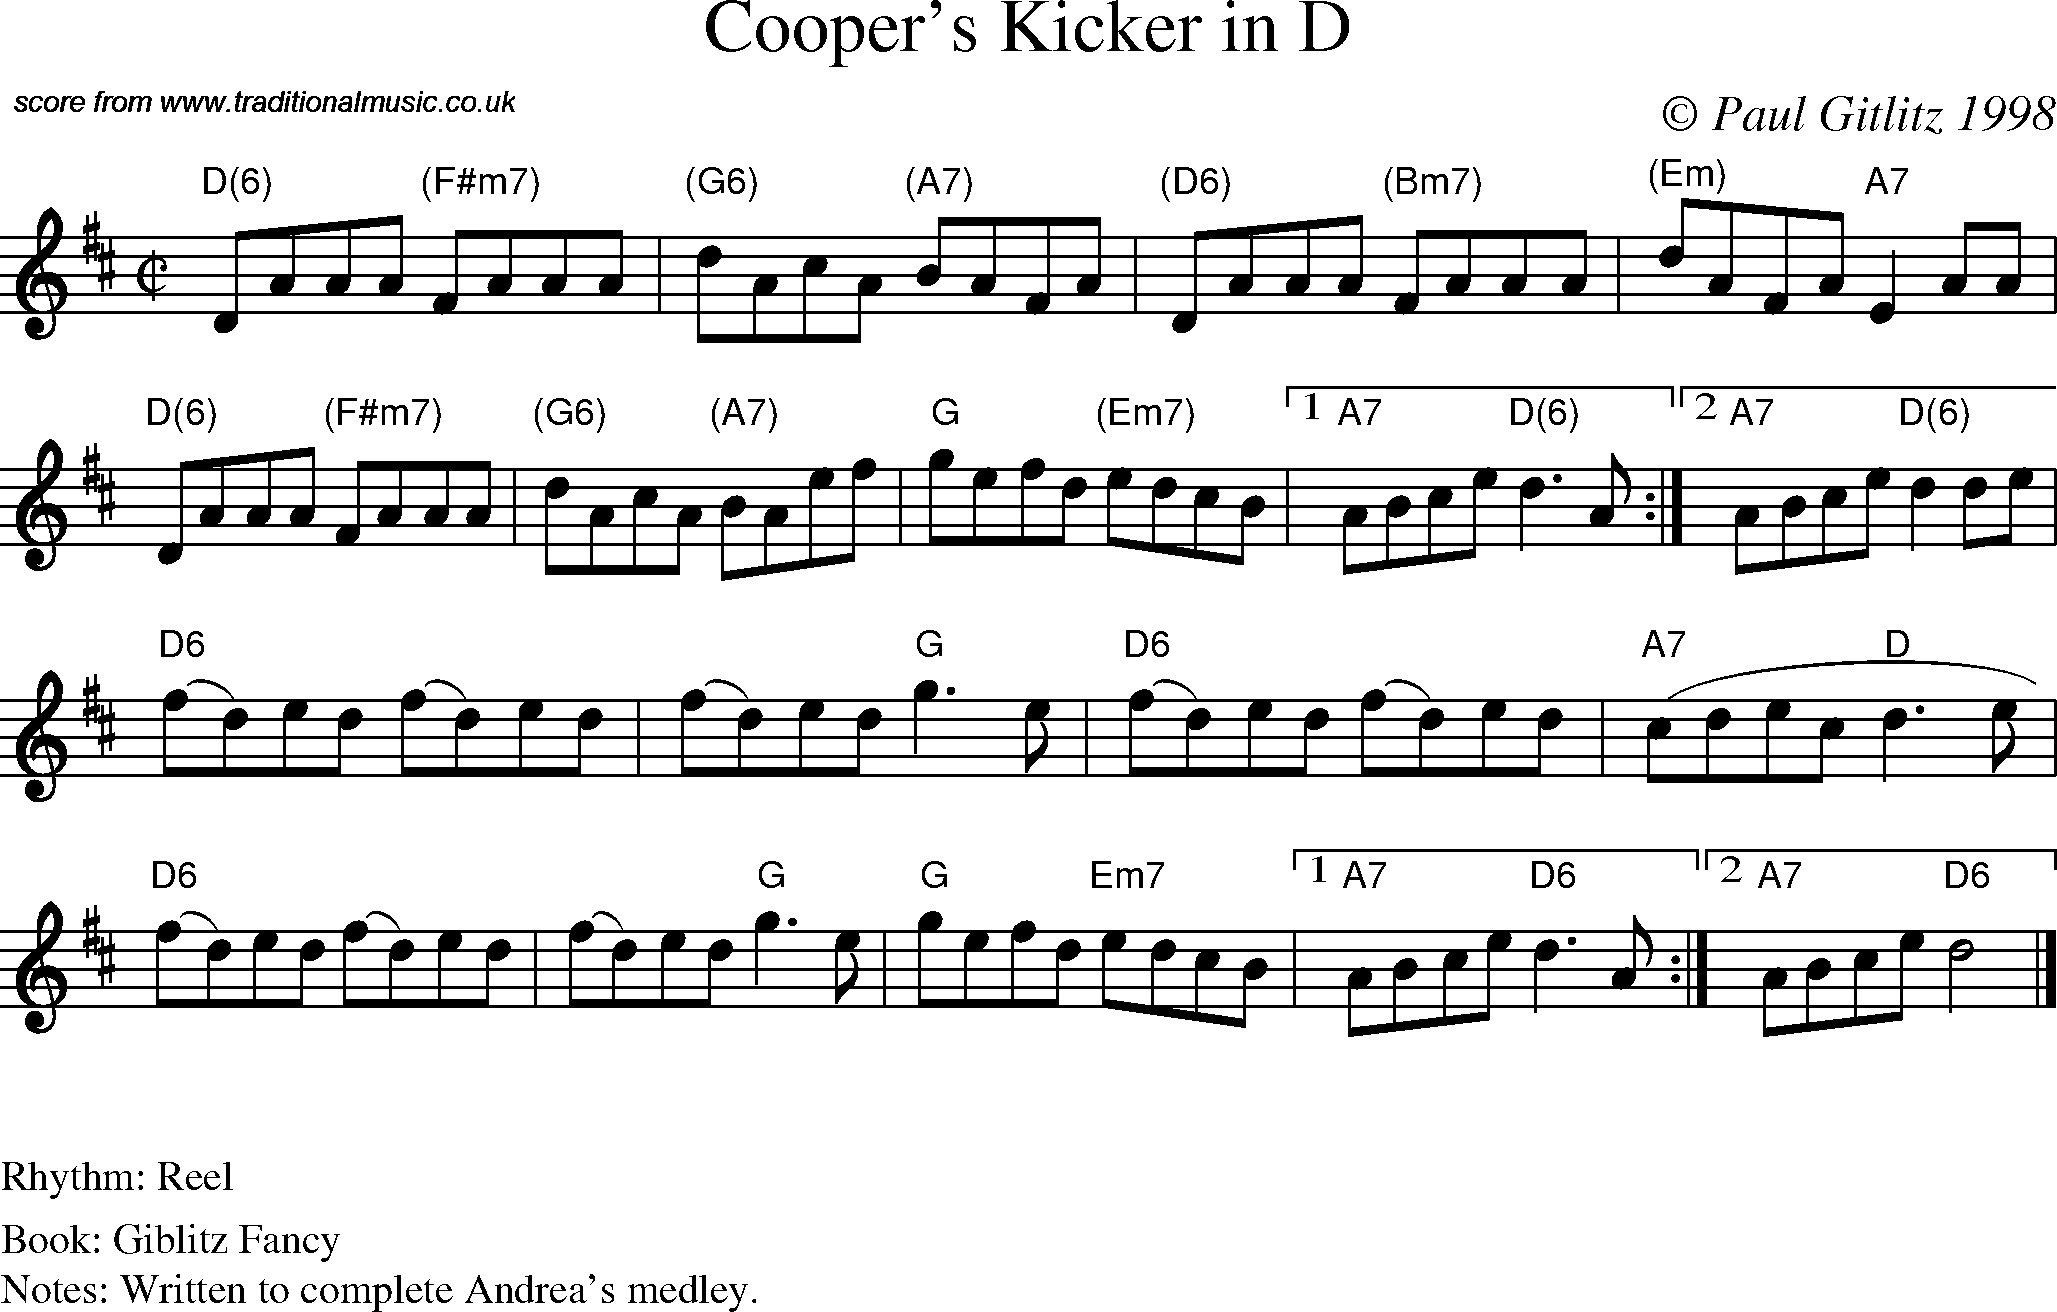 Sheet Music Score for Reel - Cooper's Kicker